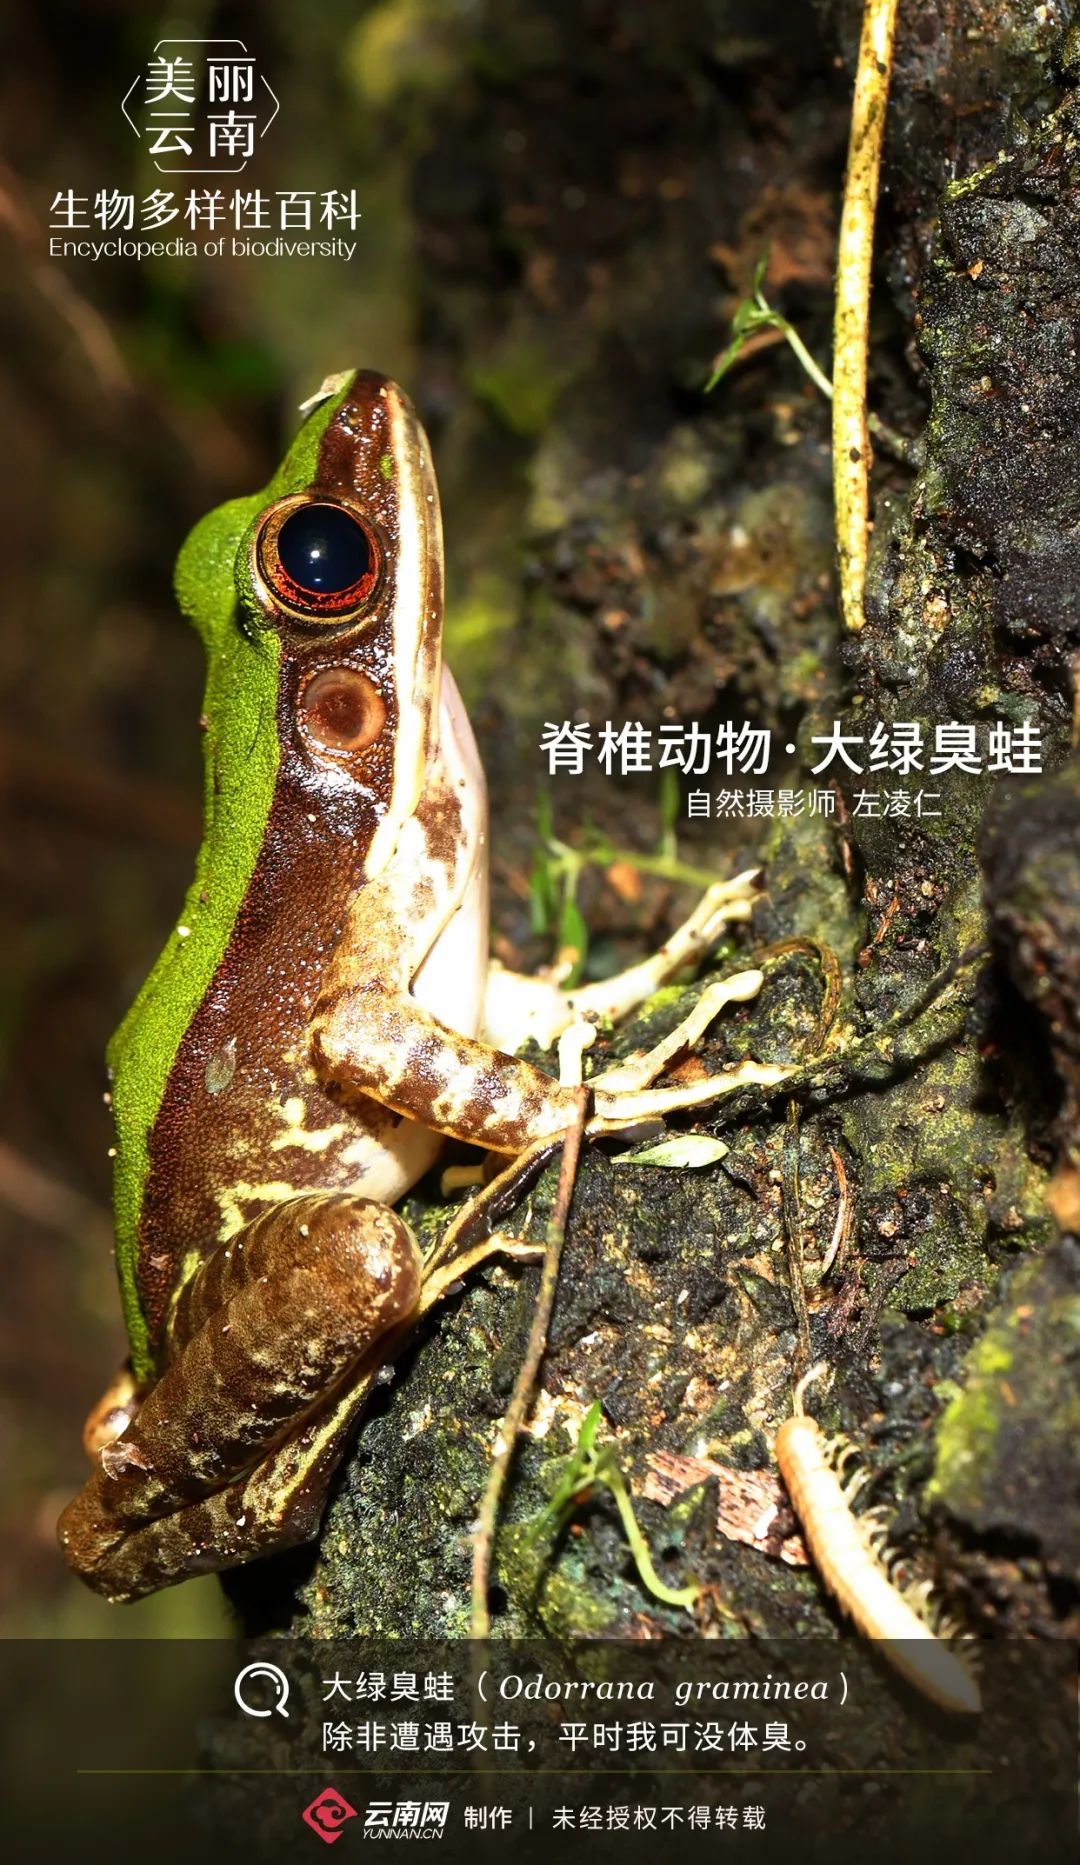 「生物多样性百科」脊椎动物·大绿臭蛙:别惹我,小心我的恶臭攻击